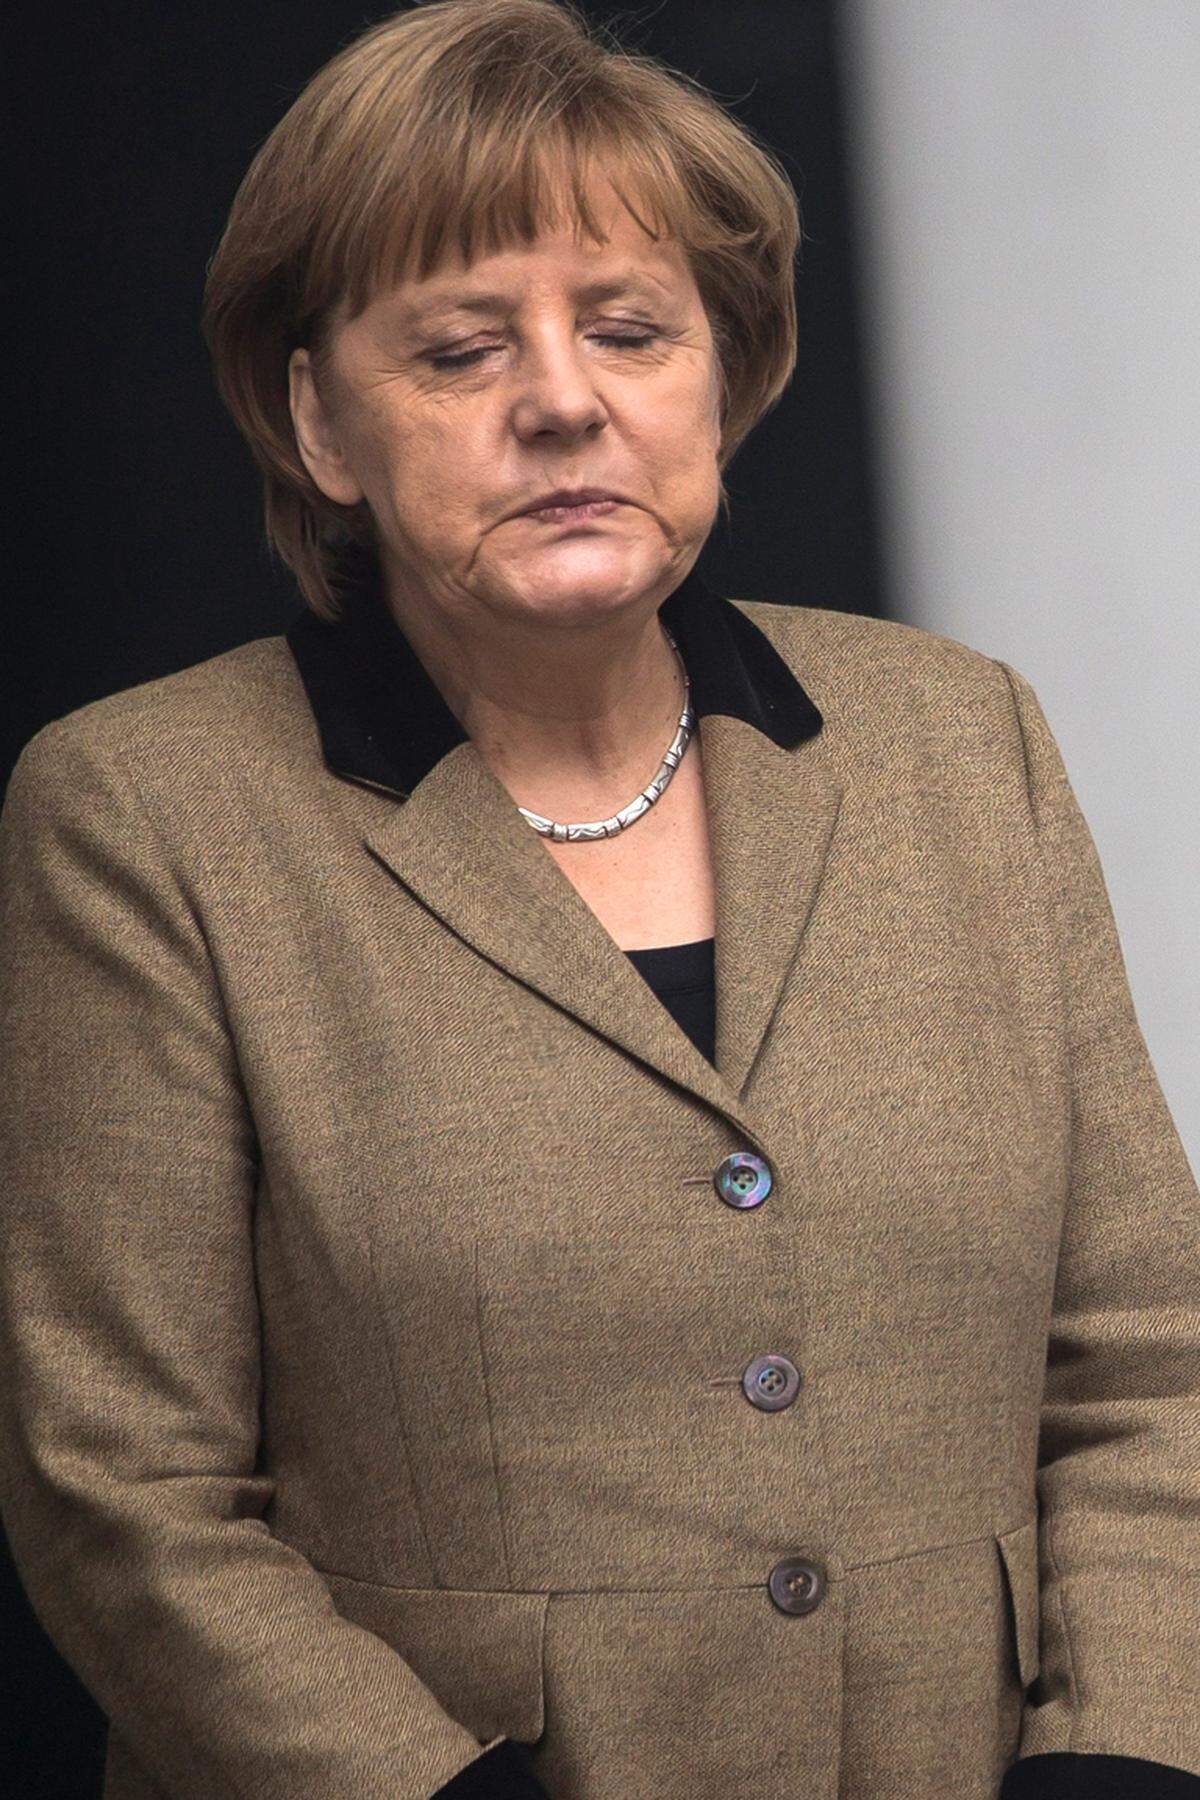 "Sie gehört der deutschen Rechten an, derselben, die Hitler unterstützt hat, die den Faschismus unterstützt hat. Das ist die Kanzlerin des heutigen Deutschland."Chávez am 1. Mai 2008 über Angela Merkel, nachdem die deutsche Kanzlerin zu verstehen gegeben hatte, dass Chávez nicht für Lateinamerika spreche.